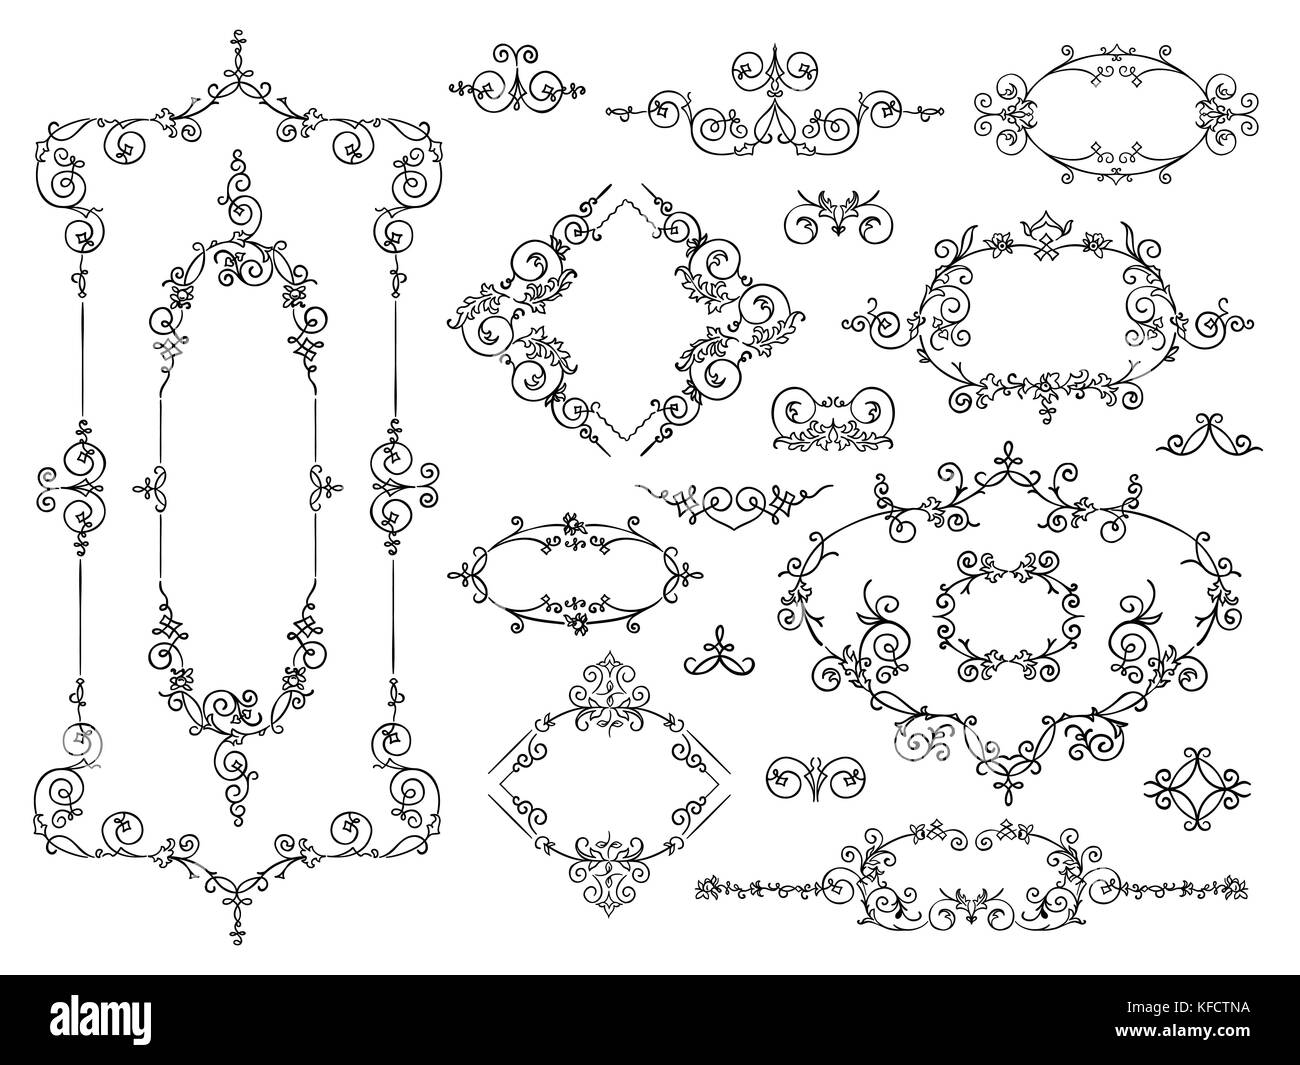 Vektor Hand gezeichnet doodle Grenze Frames mit Trennwänden und Vignetten eingestellt Stock Vektor